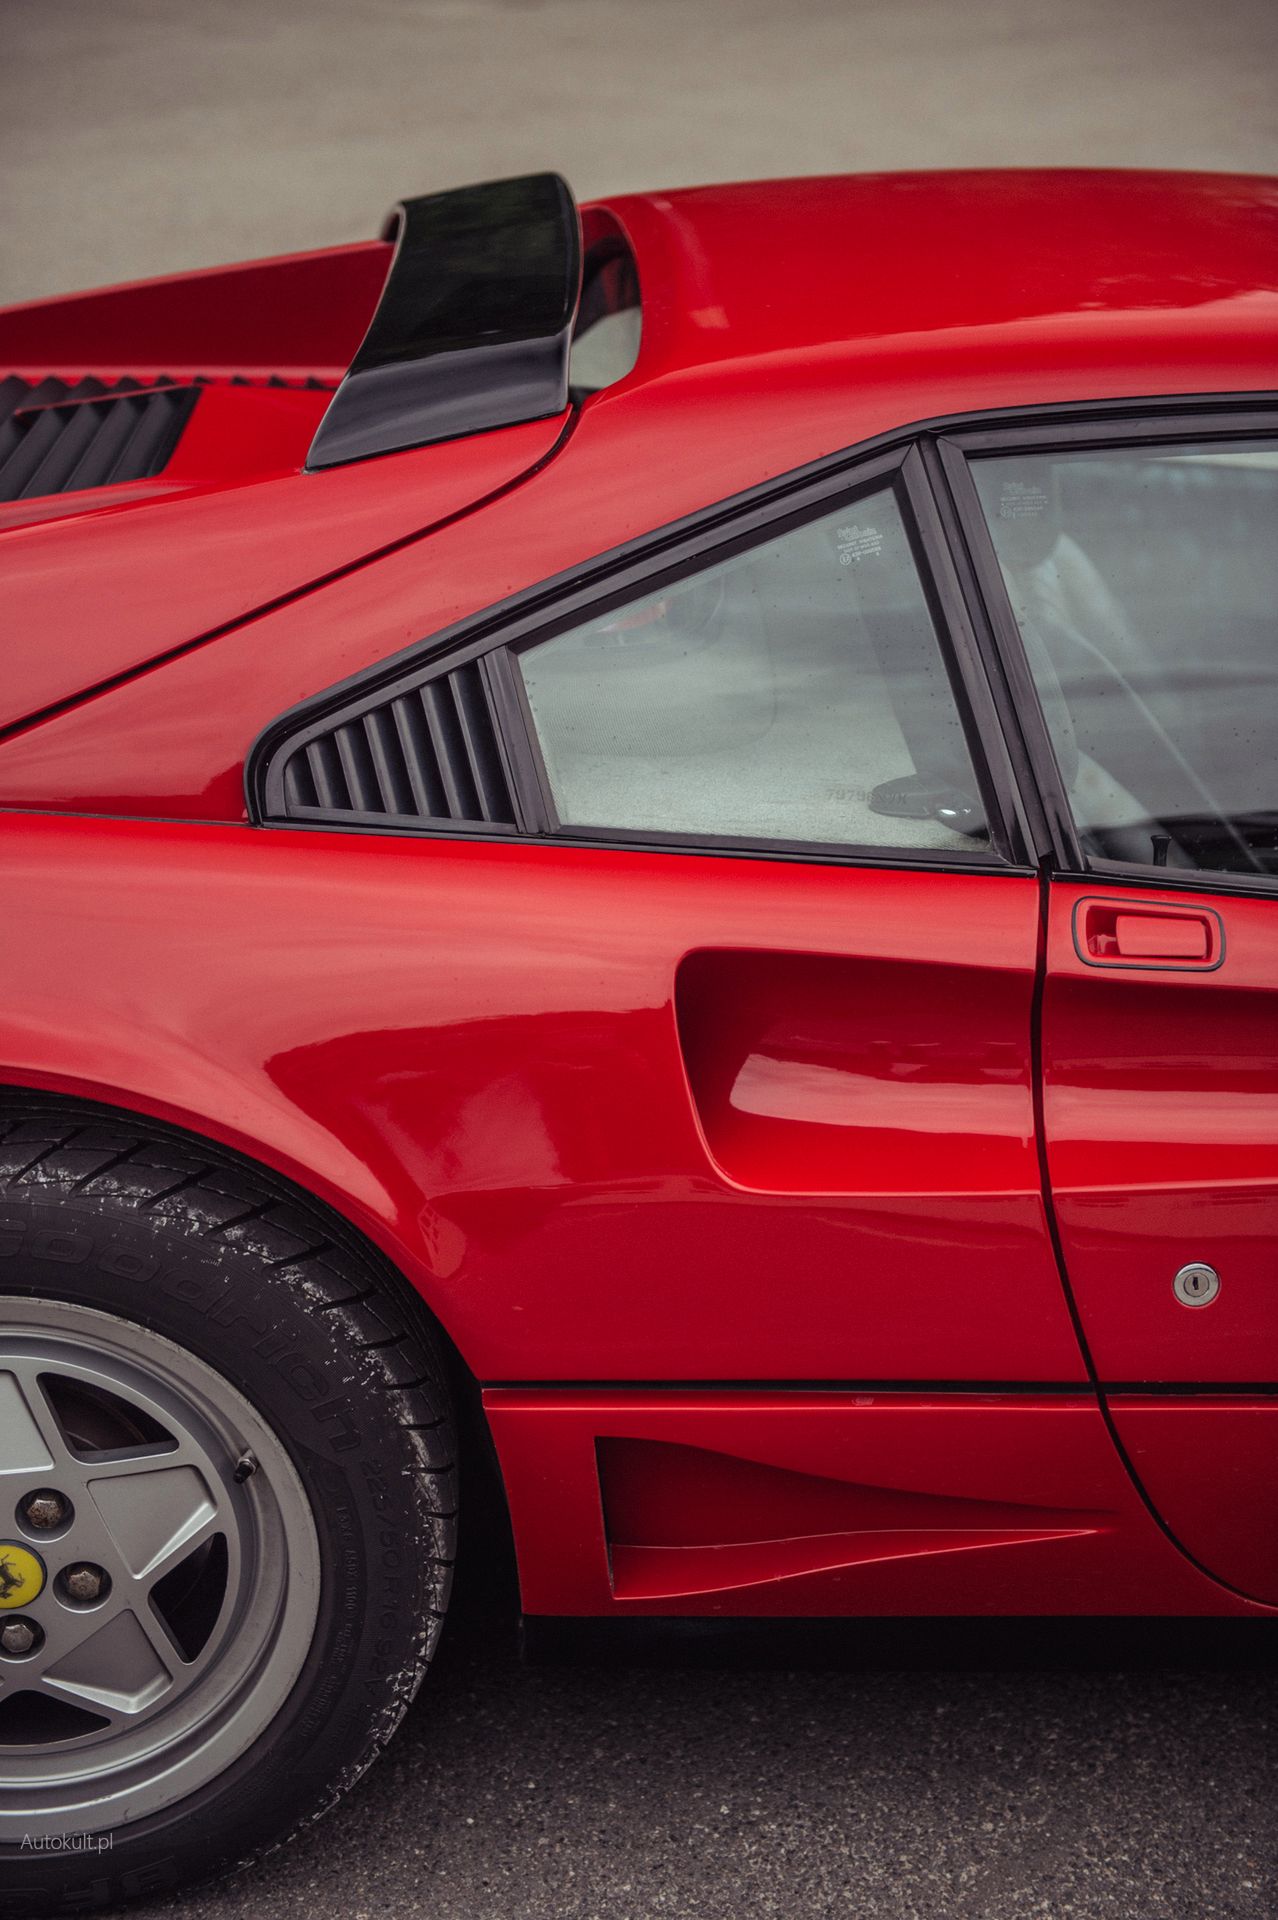 Ferrari GTB Turbo (1989) (fot. Błażej Żuławski)